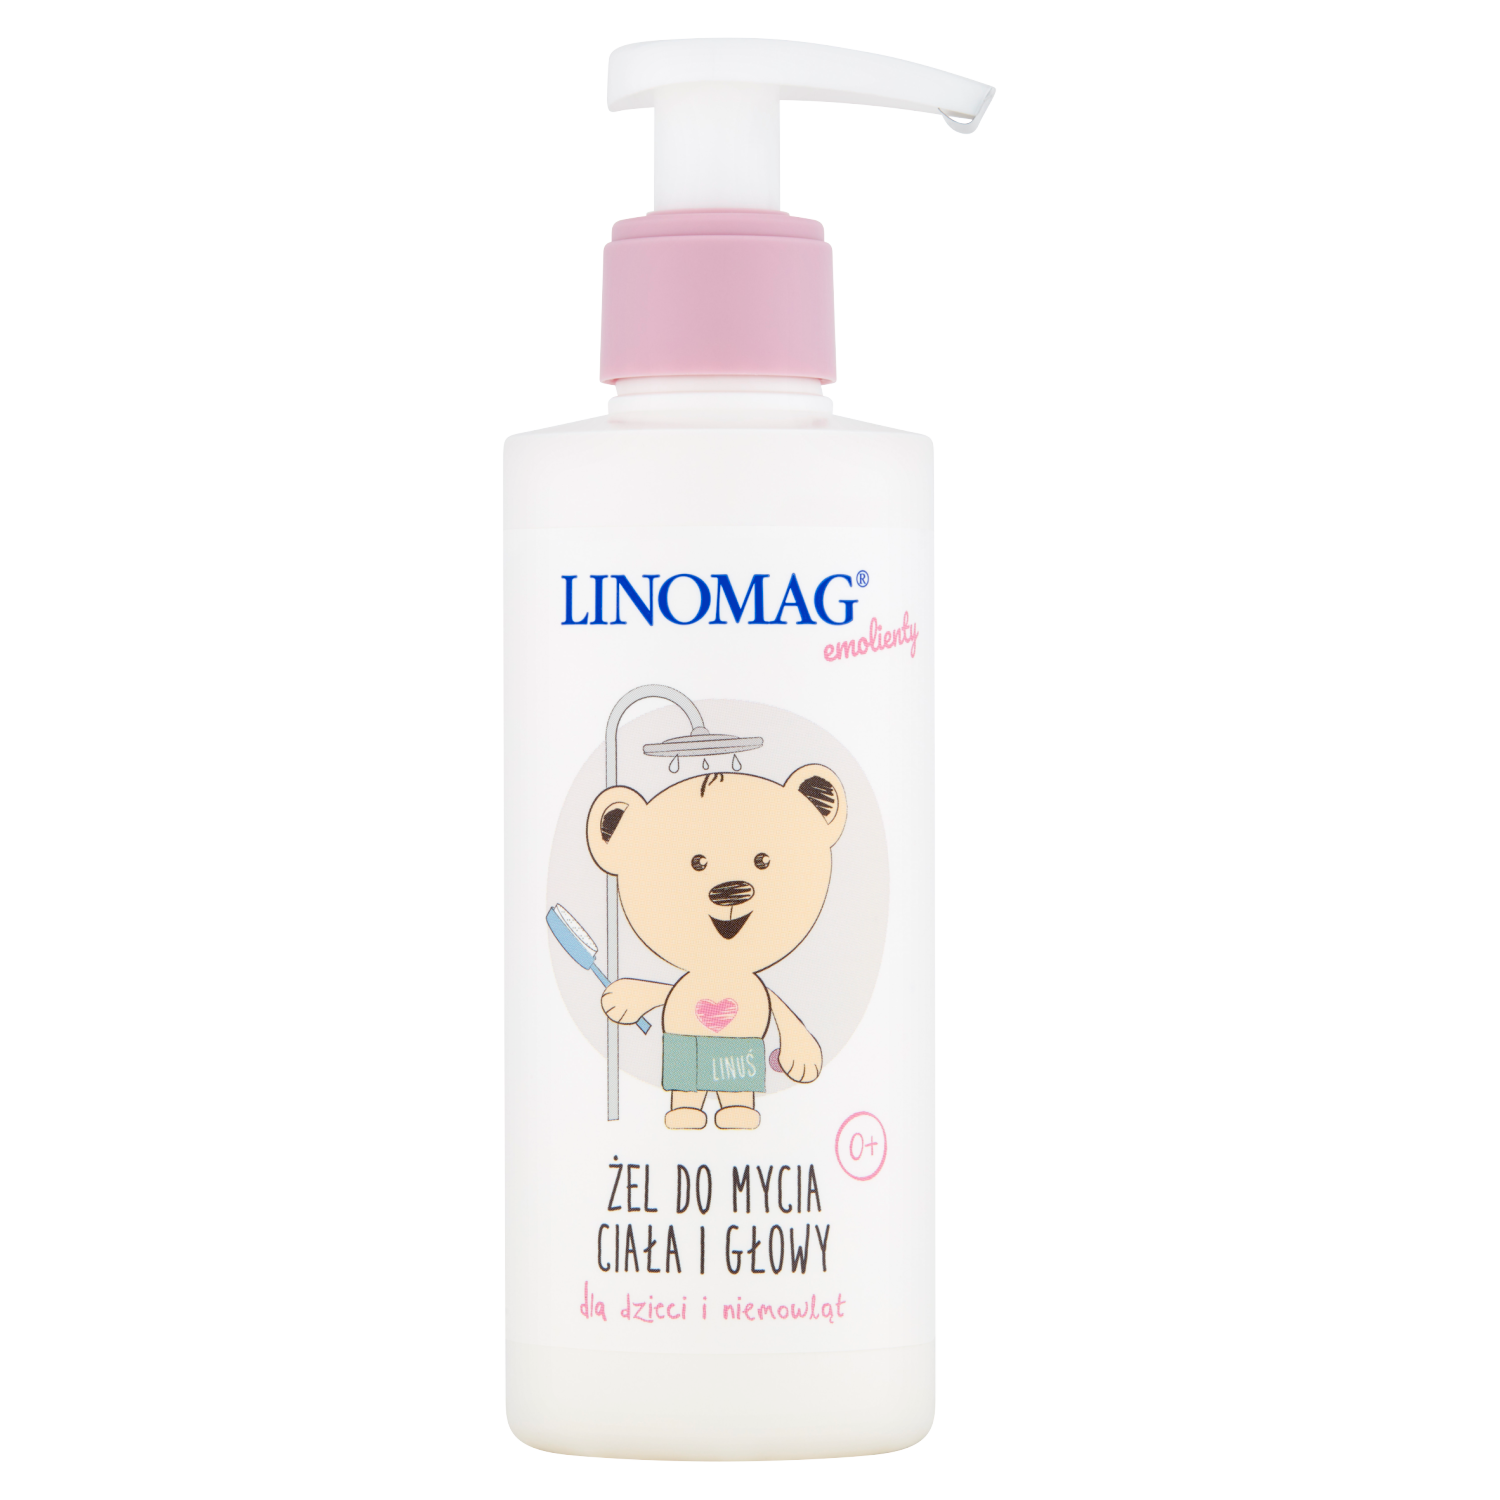 Linomag Emolienty гель для мытья тела и головы для детей и младенцев, 200 мл